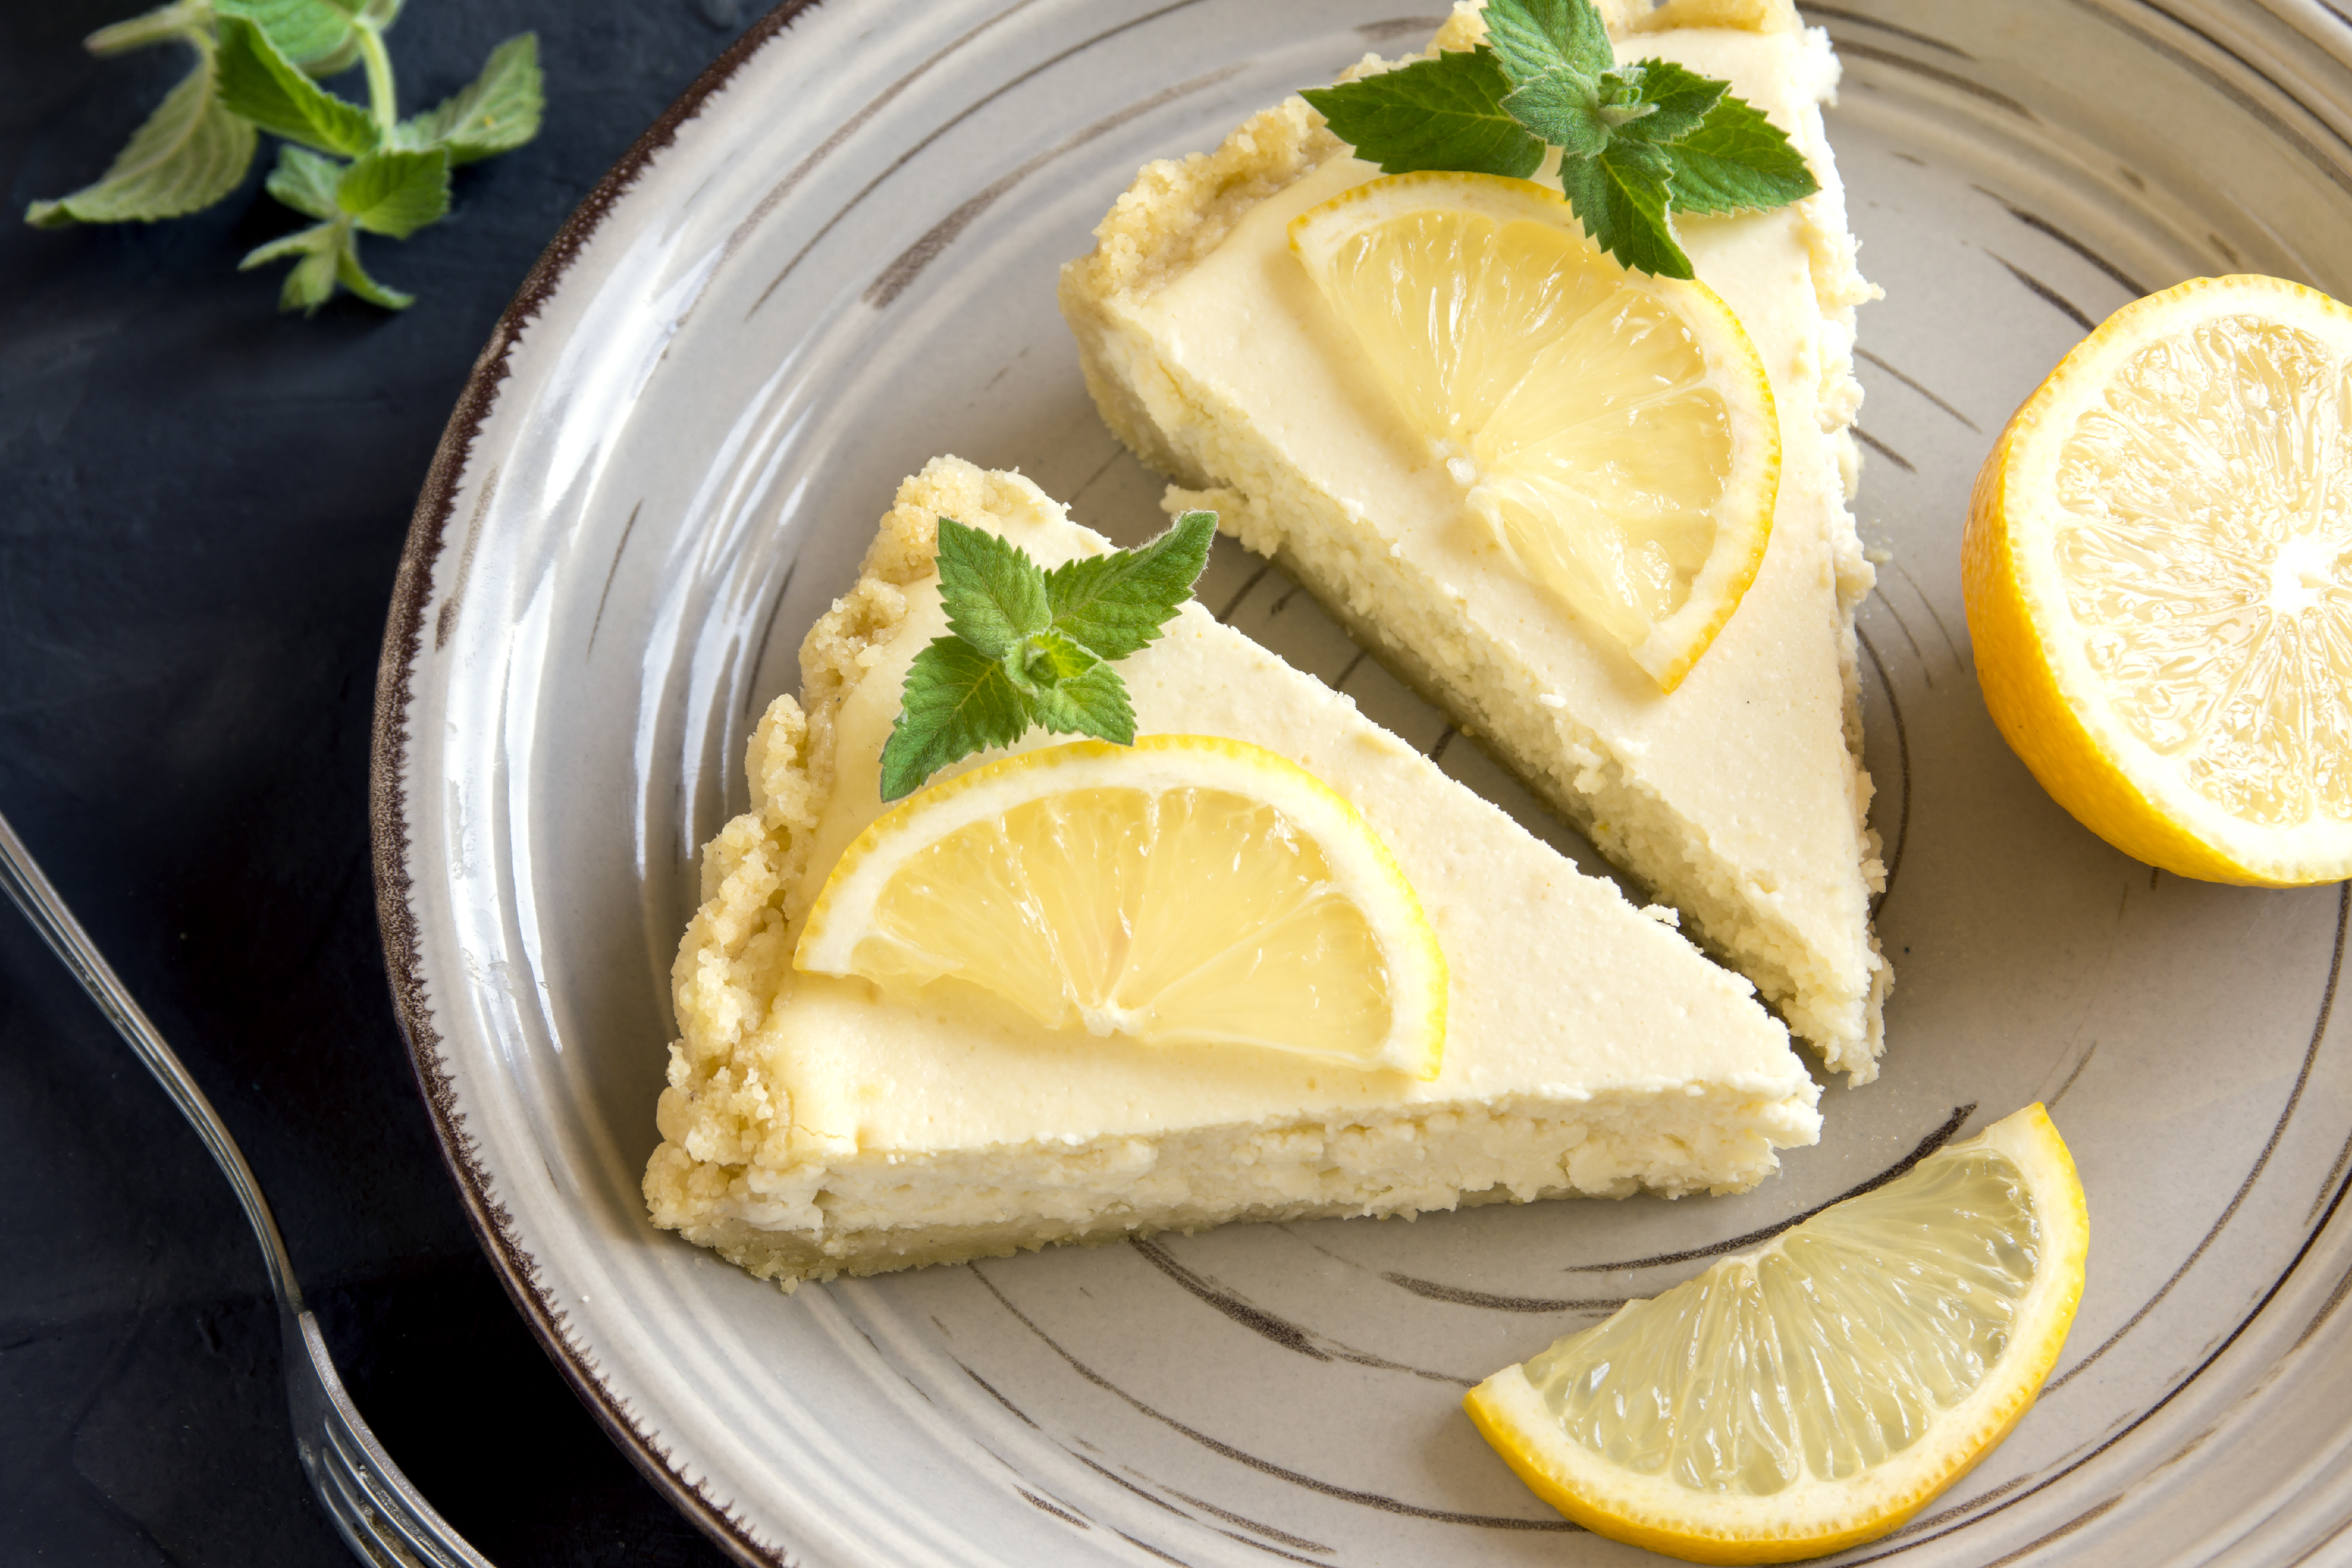 Receta: ¿Cómo preparar postre de limón? | EL ESPECTADOR